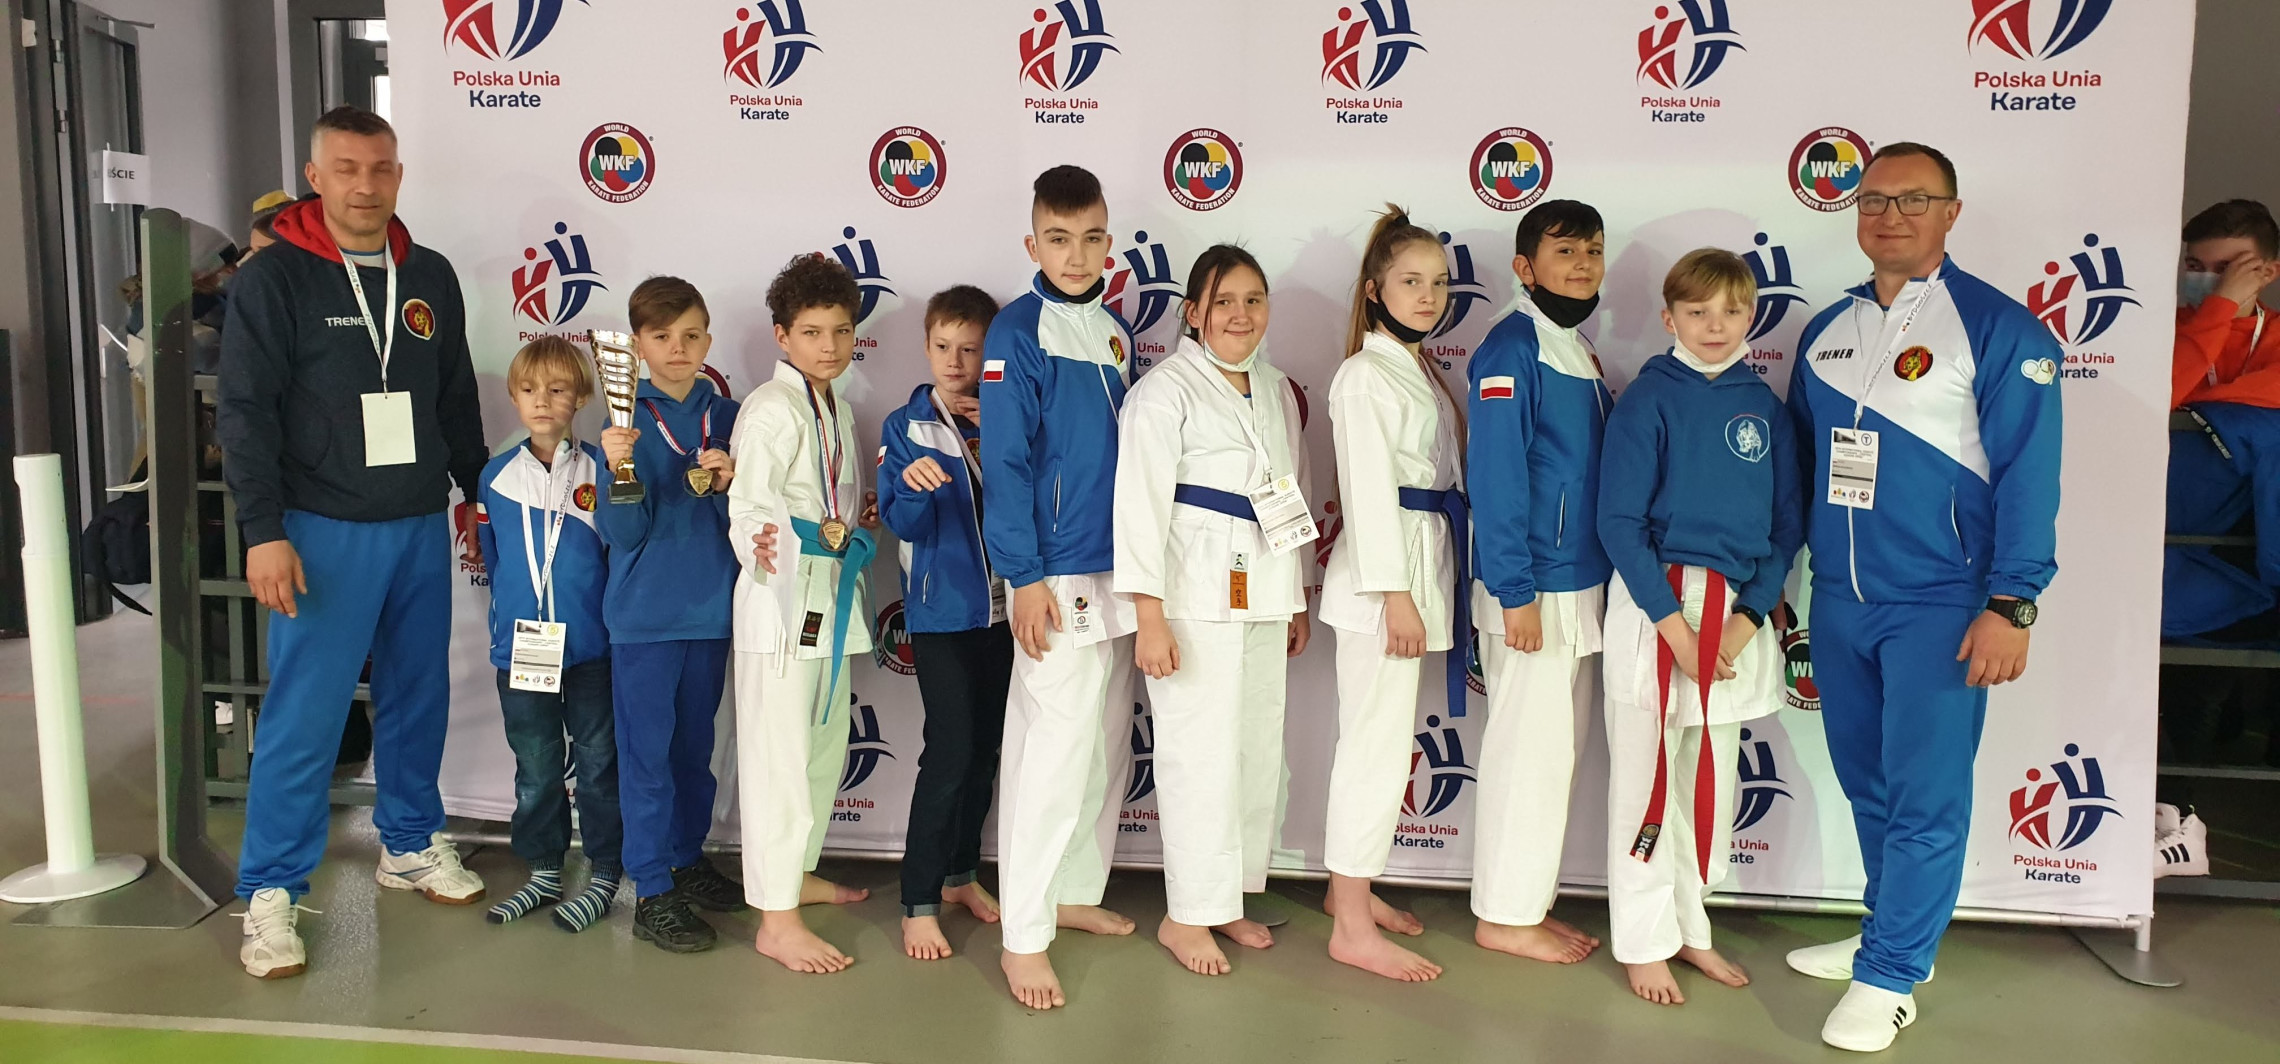 Inowrocław - Nasi karatecy wrócili z turnieju w Bydgoszczy